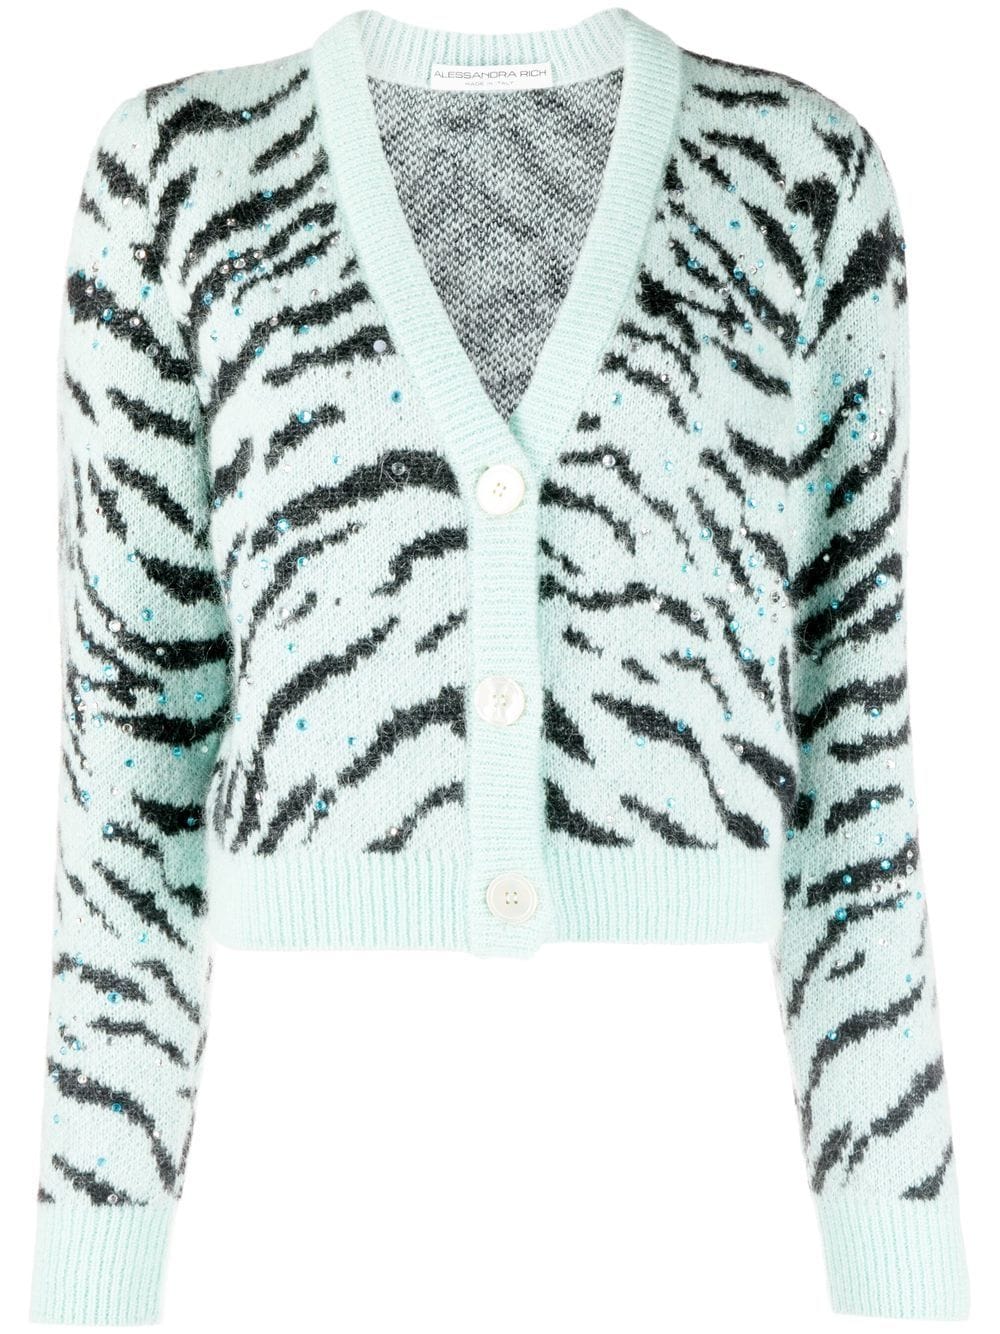 Alessandra Rich zebra-print V-neck cardigan - Green